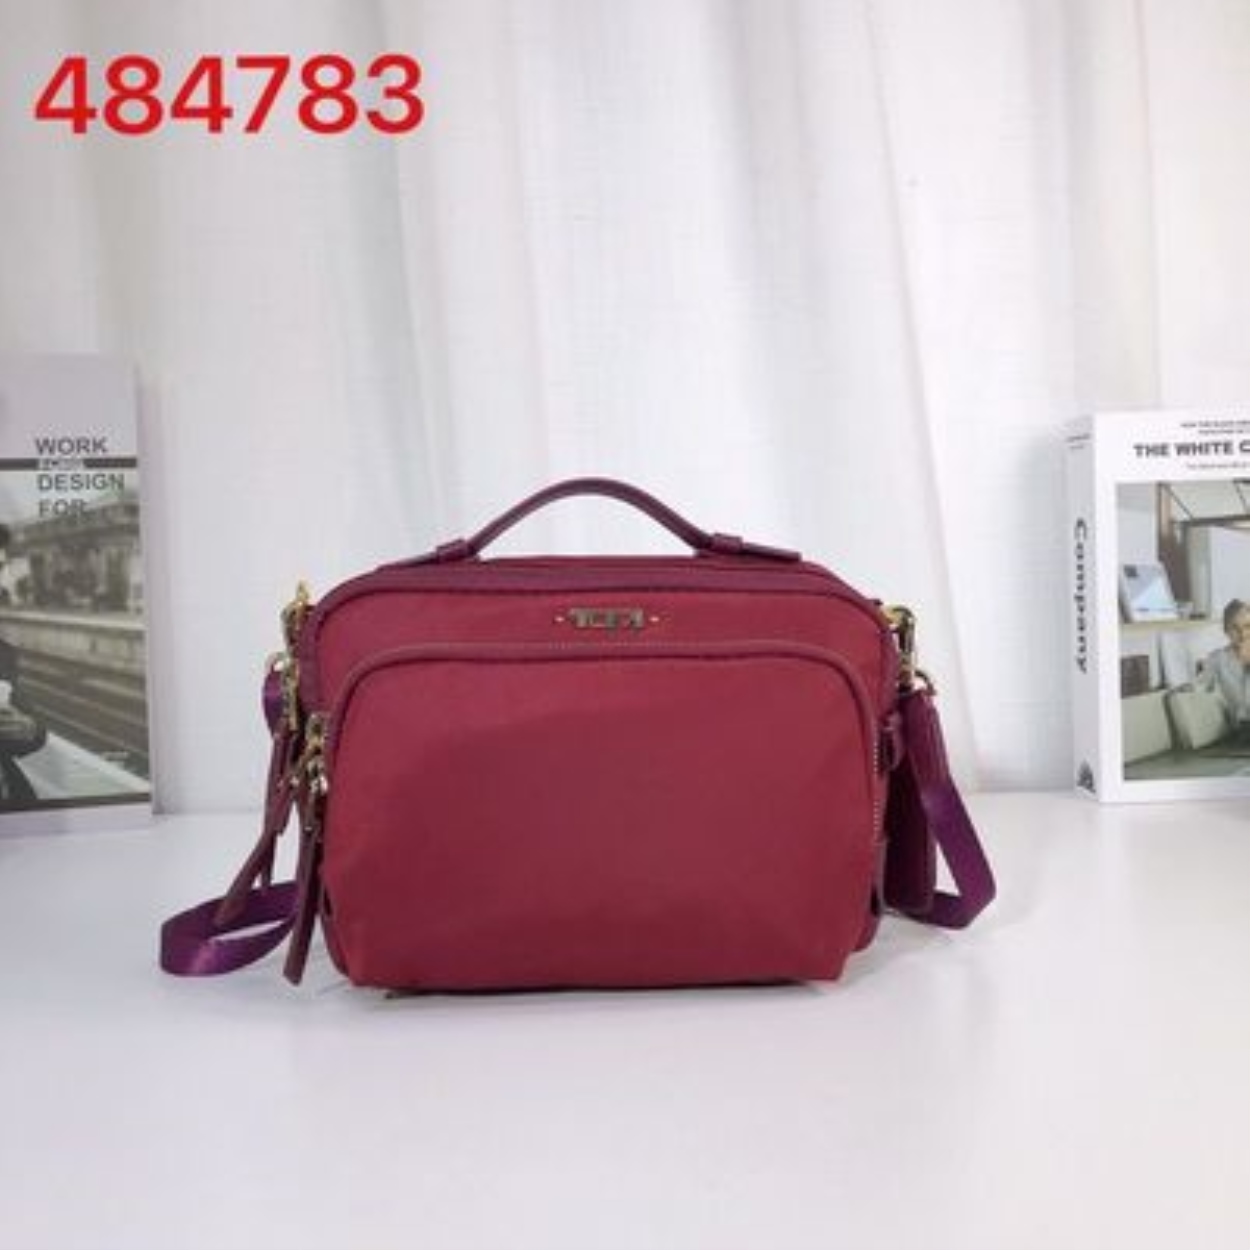 のTUMIの Tuming 484783 Ladies Messenger Bag! Classic evergreen model ...